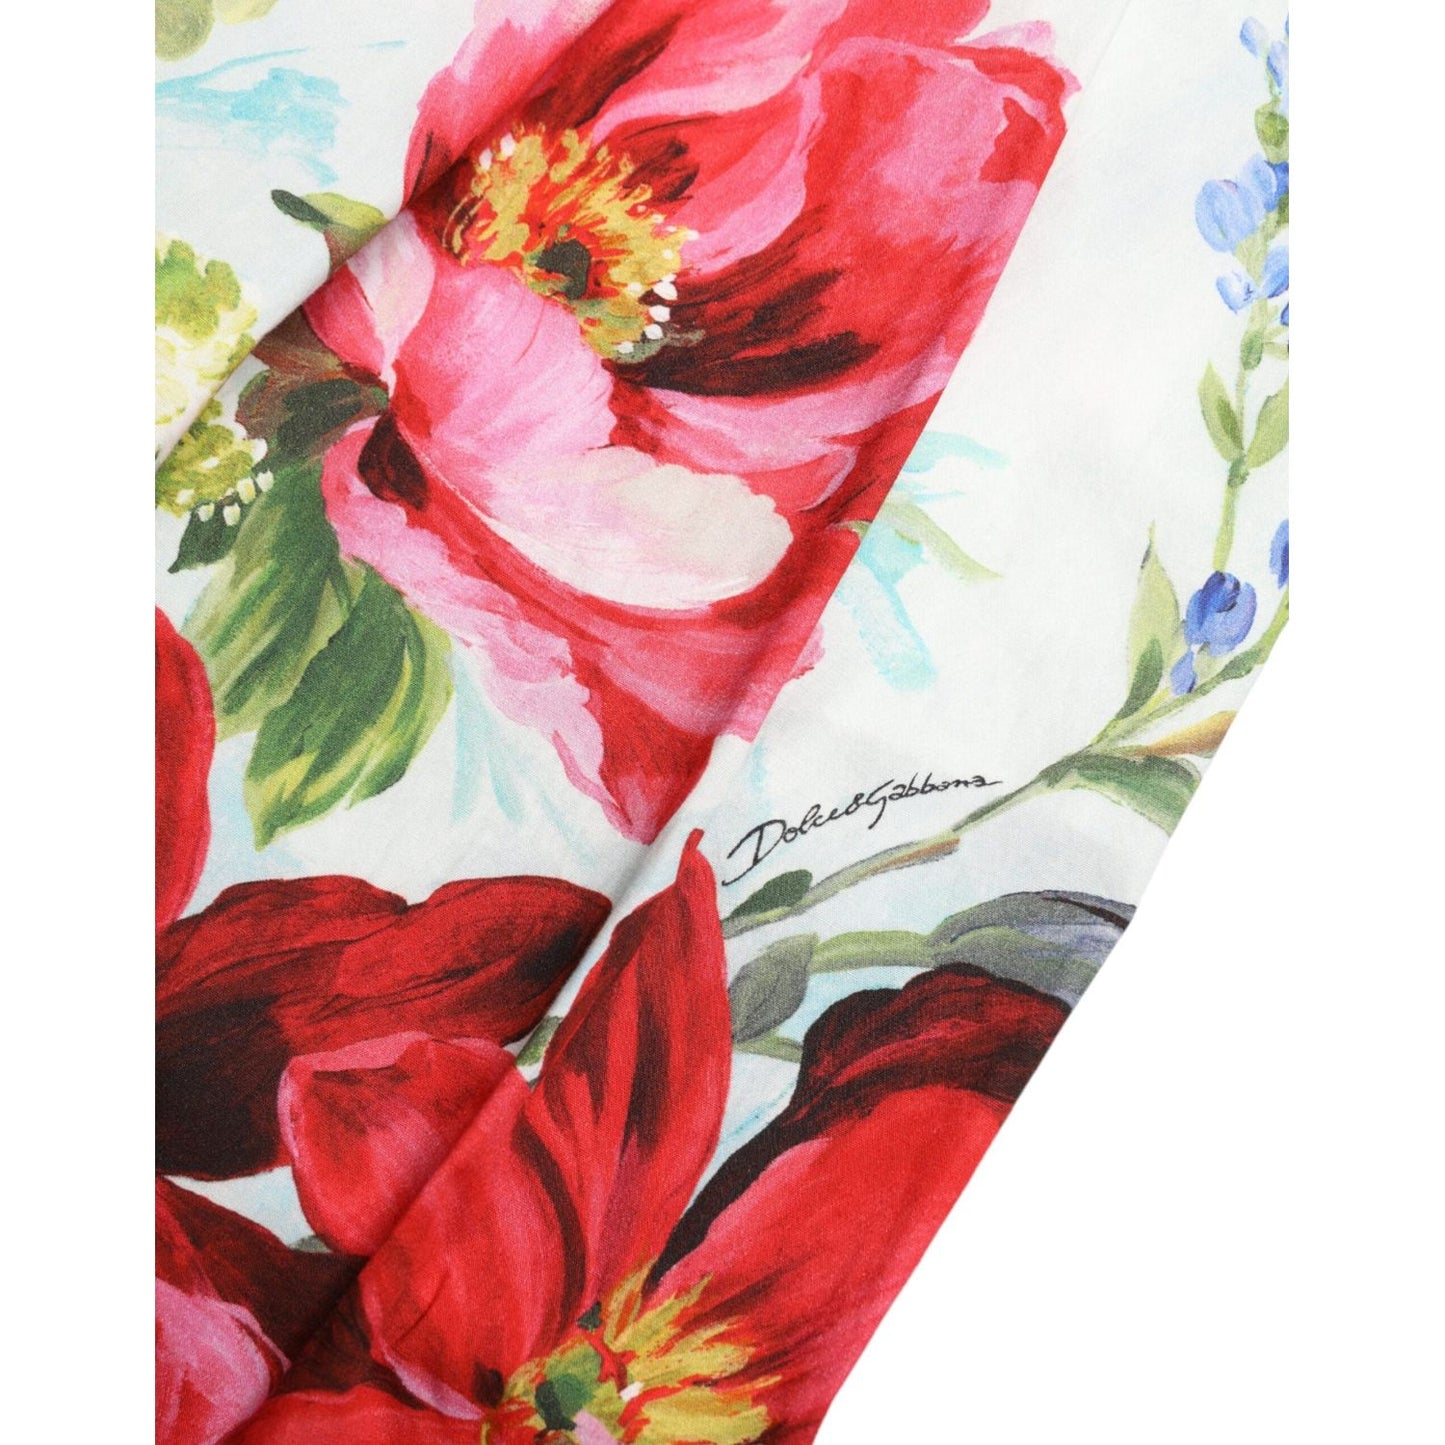 Dolce & Gabbana Floral High Waist Wide Leg Pants multicolor-floral-high-waist-wide-leg-pants